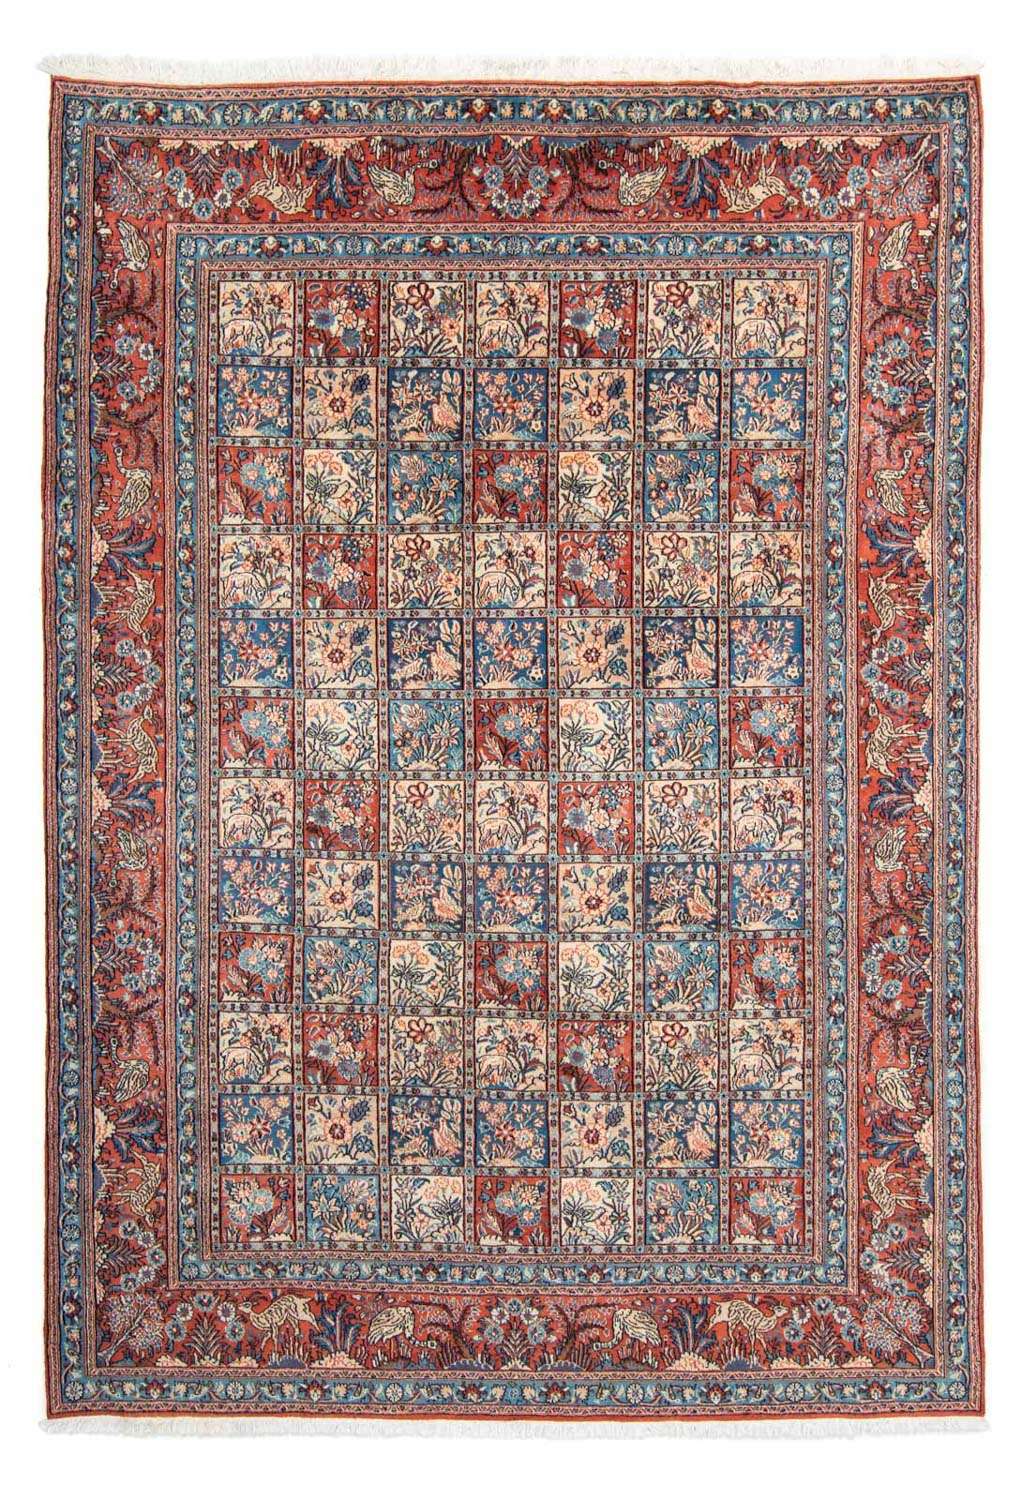 Perský koberec - Klasický - 298 x 204 cm - světle červená